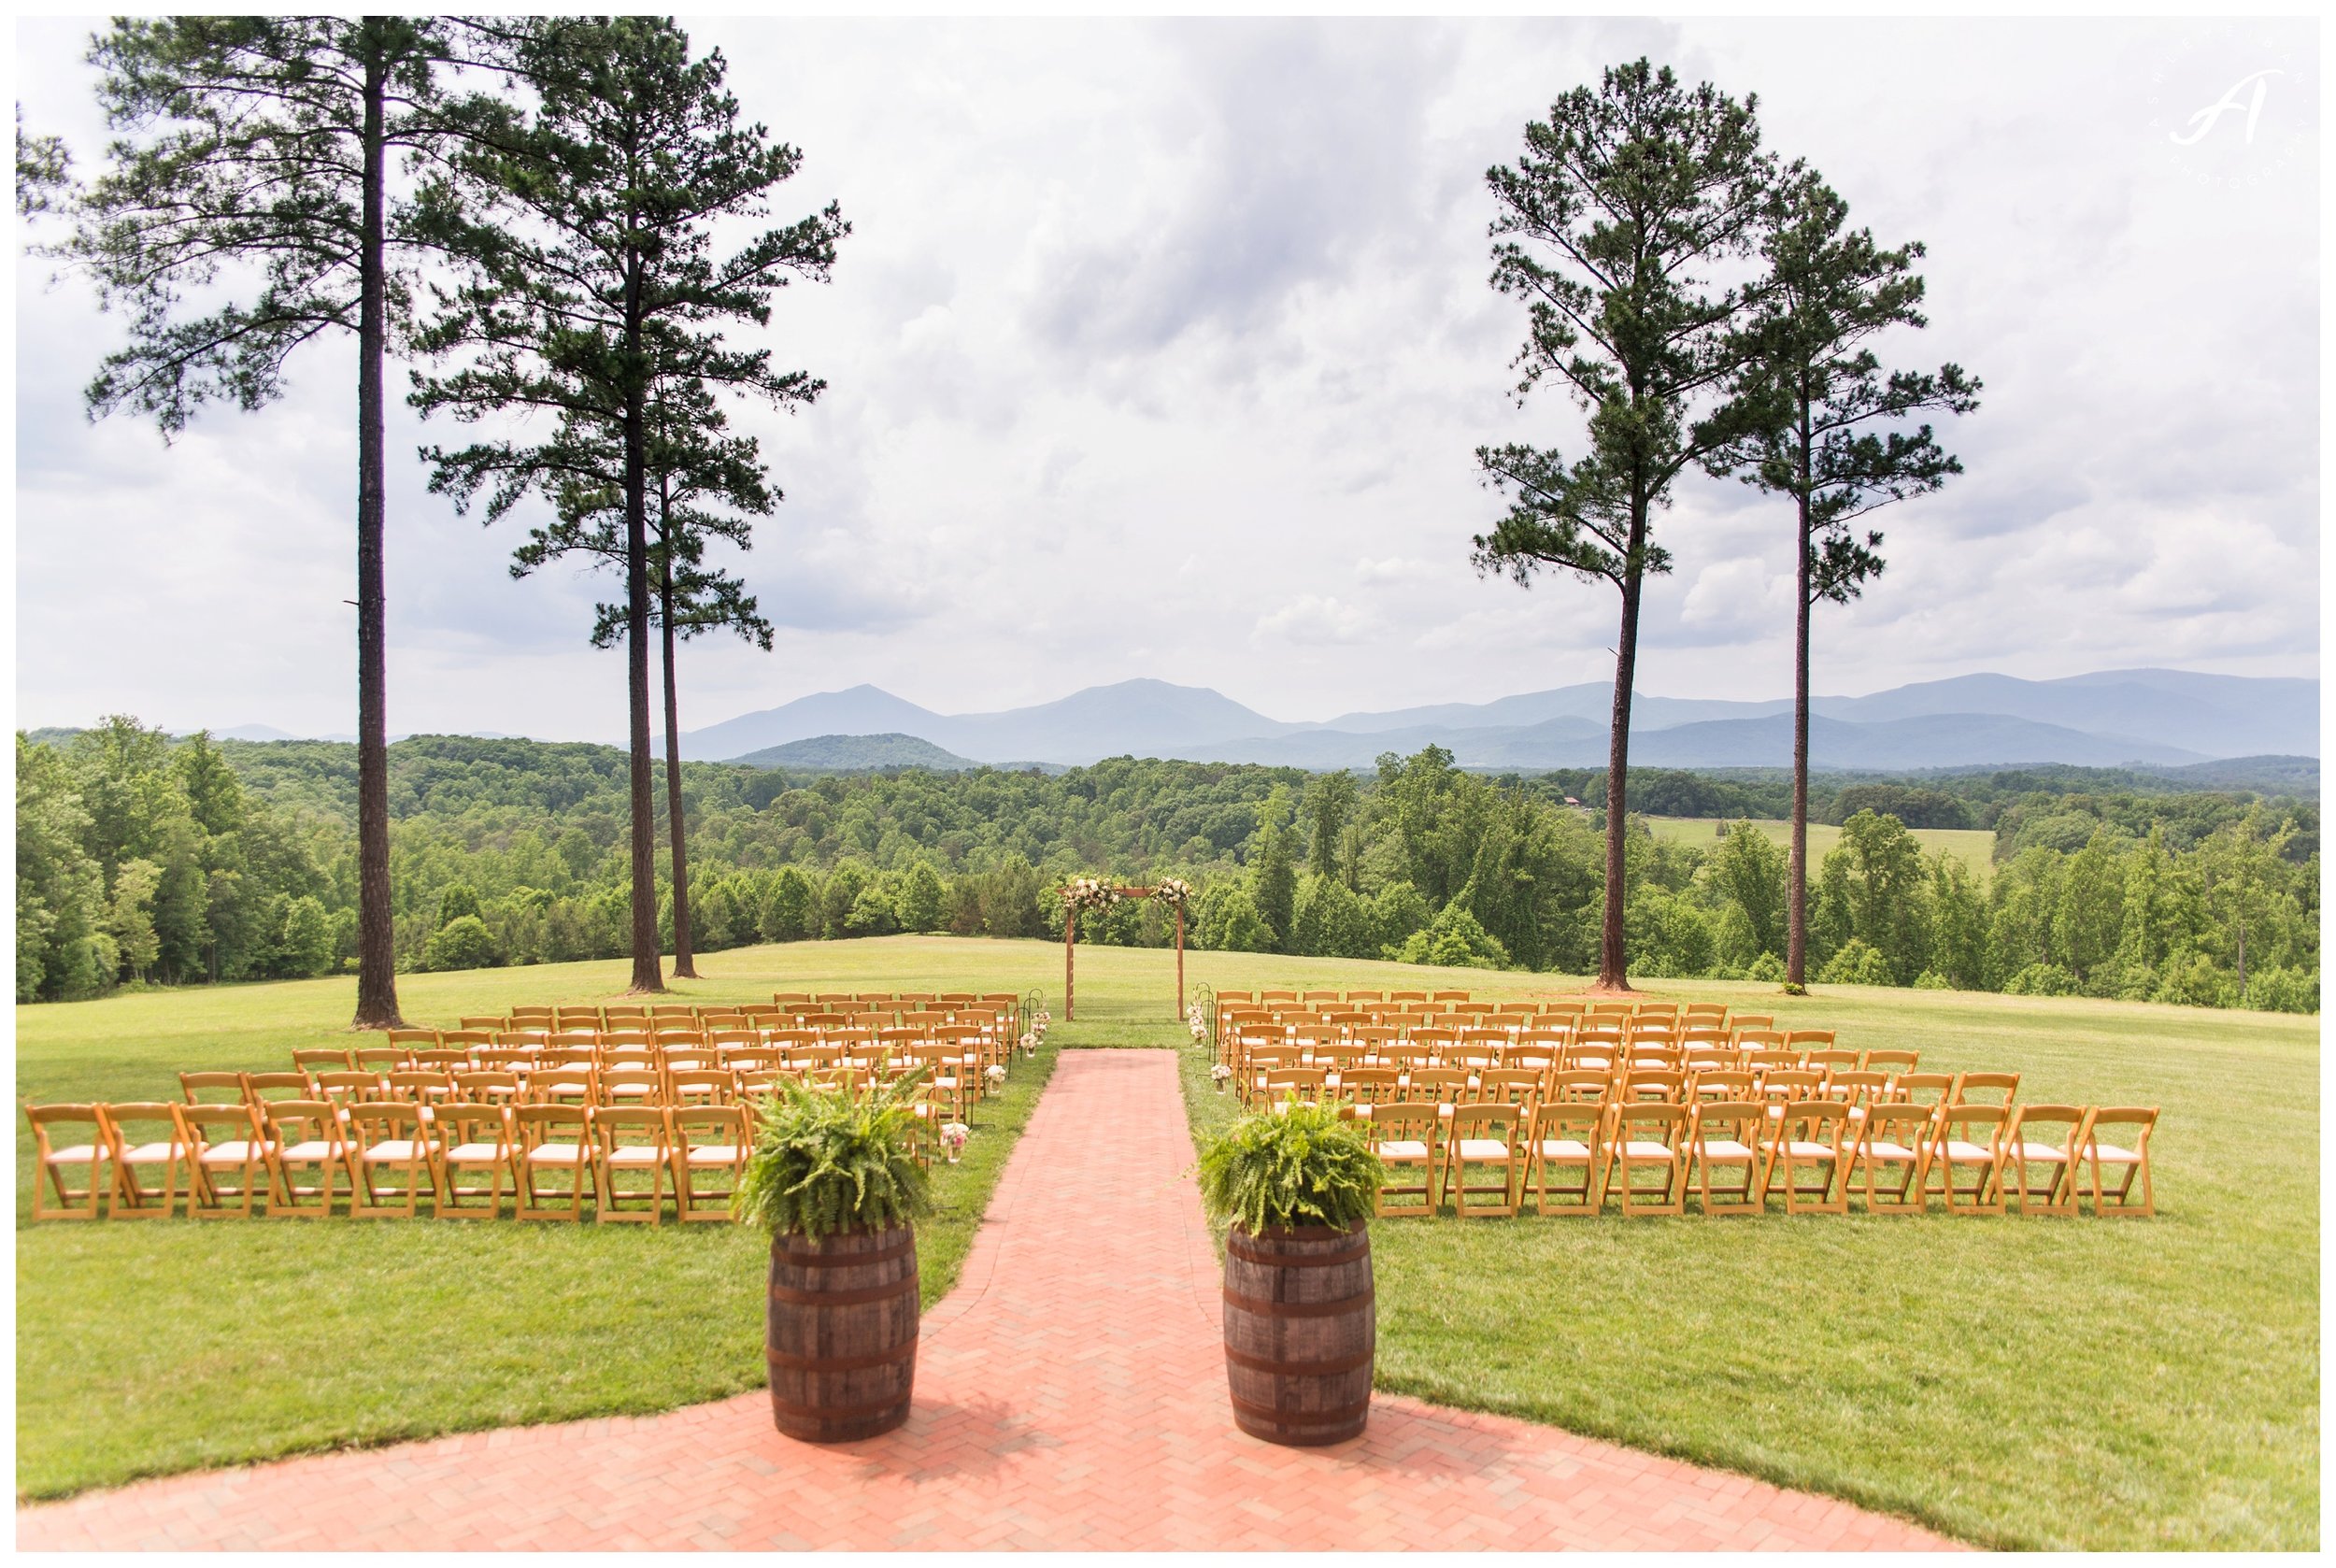 Mountain View Wedding at Sierra Vista in Central Virginia || Ashley Eiban Photography || www.ashleyeiban.com